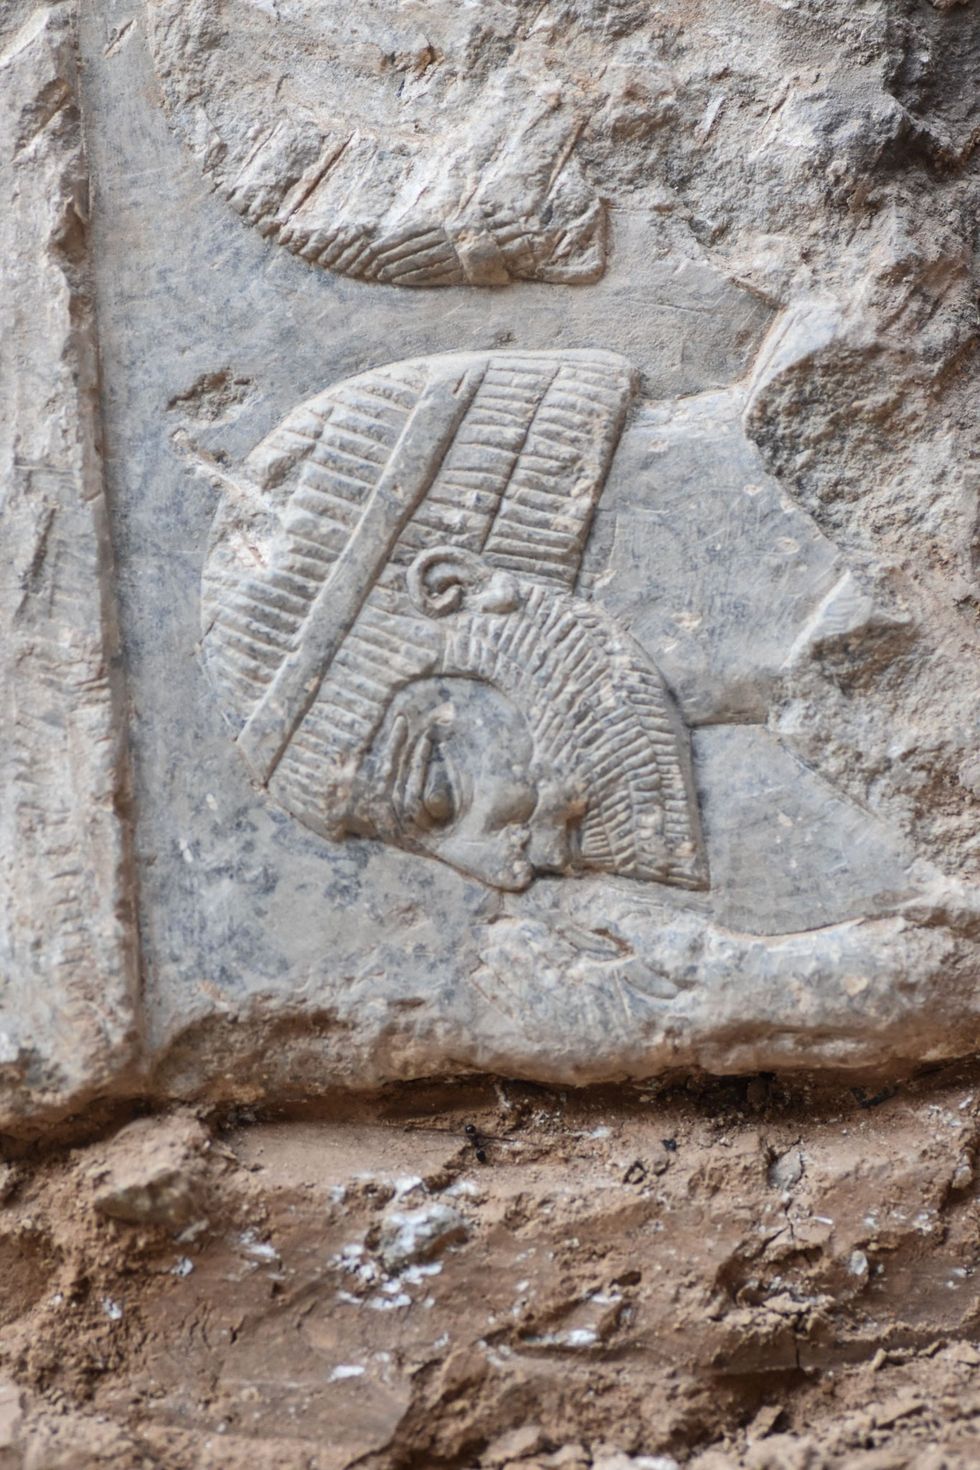 Op een detail op de rechterbenedenhoek van de plaat is een vreemdeling te zien met een haarstijl en baard die kenmerkend zijn voor toenmalige inwoners van Iran Assyrische figuren worden meestal afgebeeld met een krullende baard en krullend haar tot op hun schouders